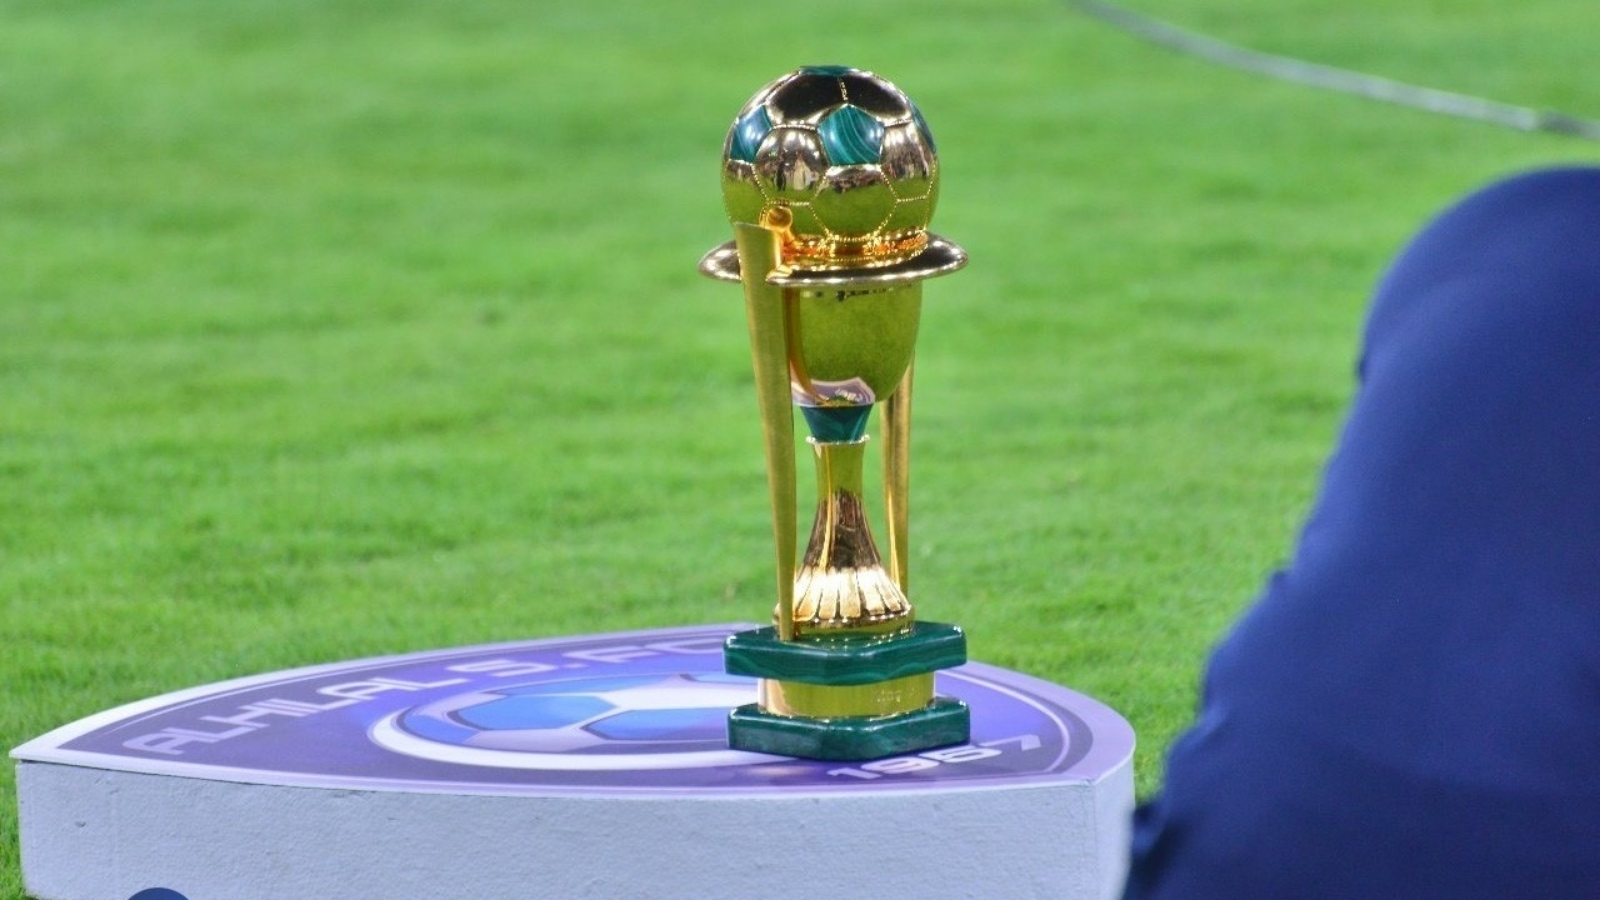 جدول مباريات كأس الملك السعودي 2023 والقنوات الناقلة لمباراة الهلال والرائد